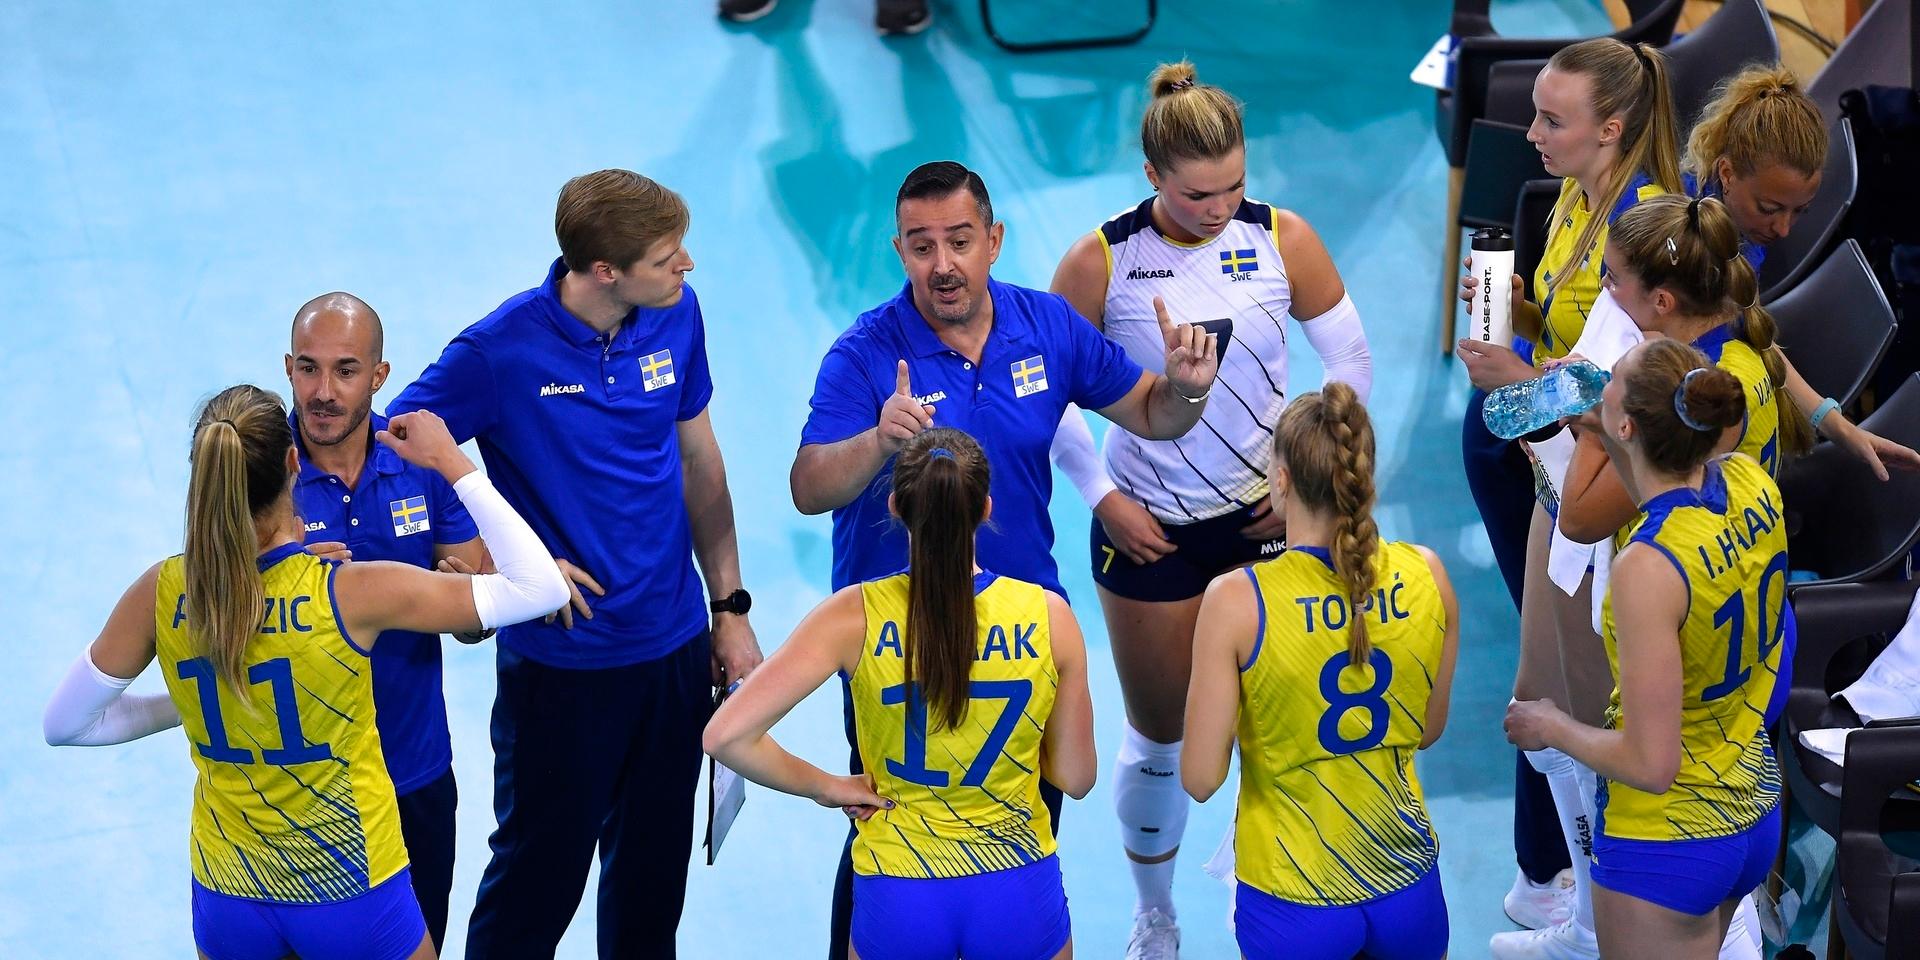 Sveriges förbundskapten Ettore Guidetti förmedlar instruktioner till laget. Till vänster om honom står Victor Alexandersson som är fystränare i det svenska damlandslaget i volleyboll. På lördag spelar Sverige åttondelsfinal mot Bulgarien i Bulgarien.